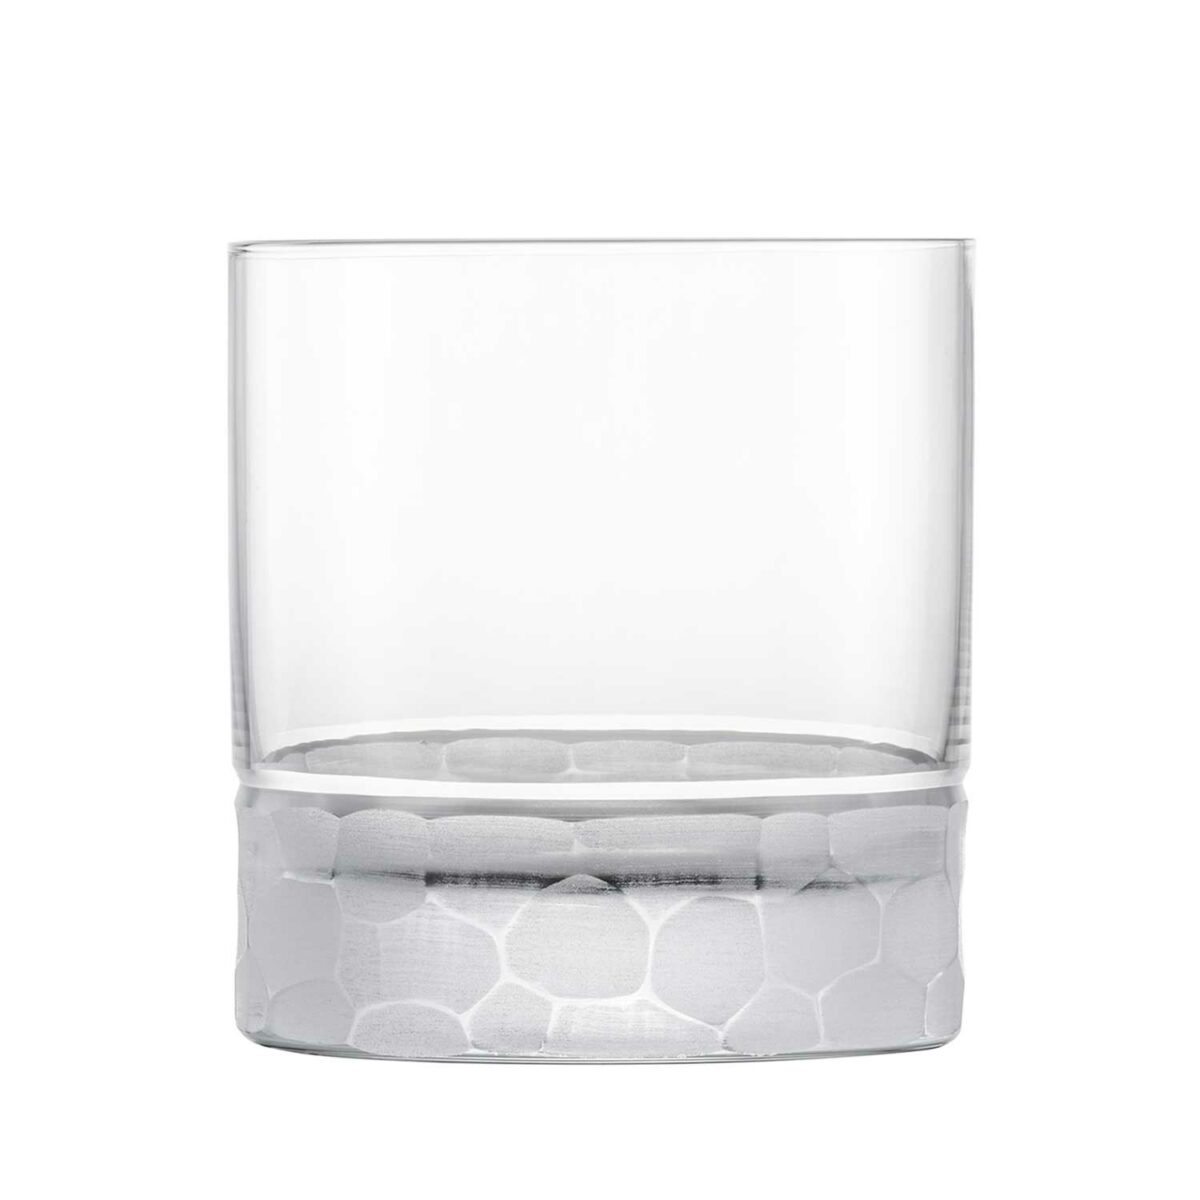 HAMILTON Whisky Kristallglas Set